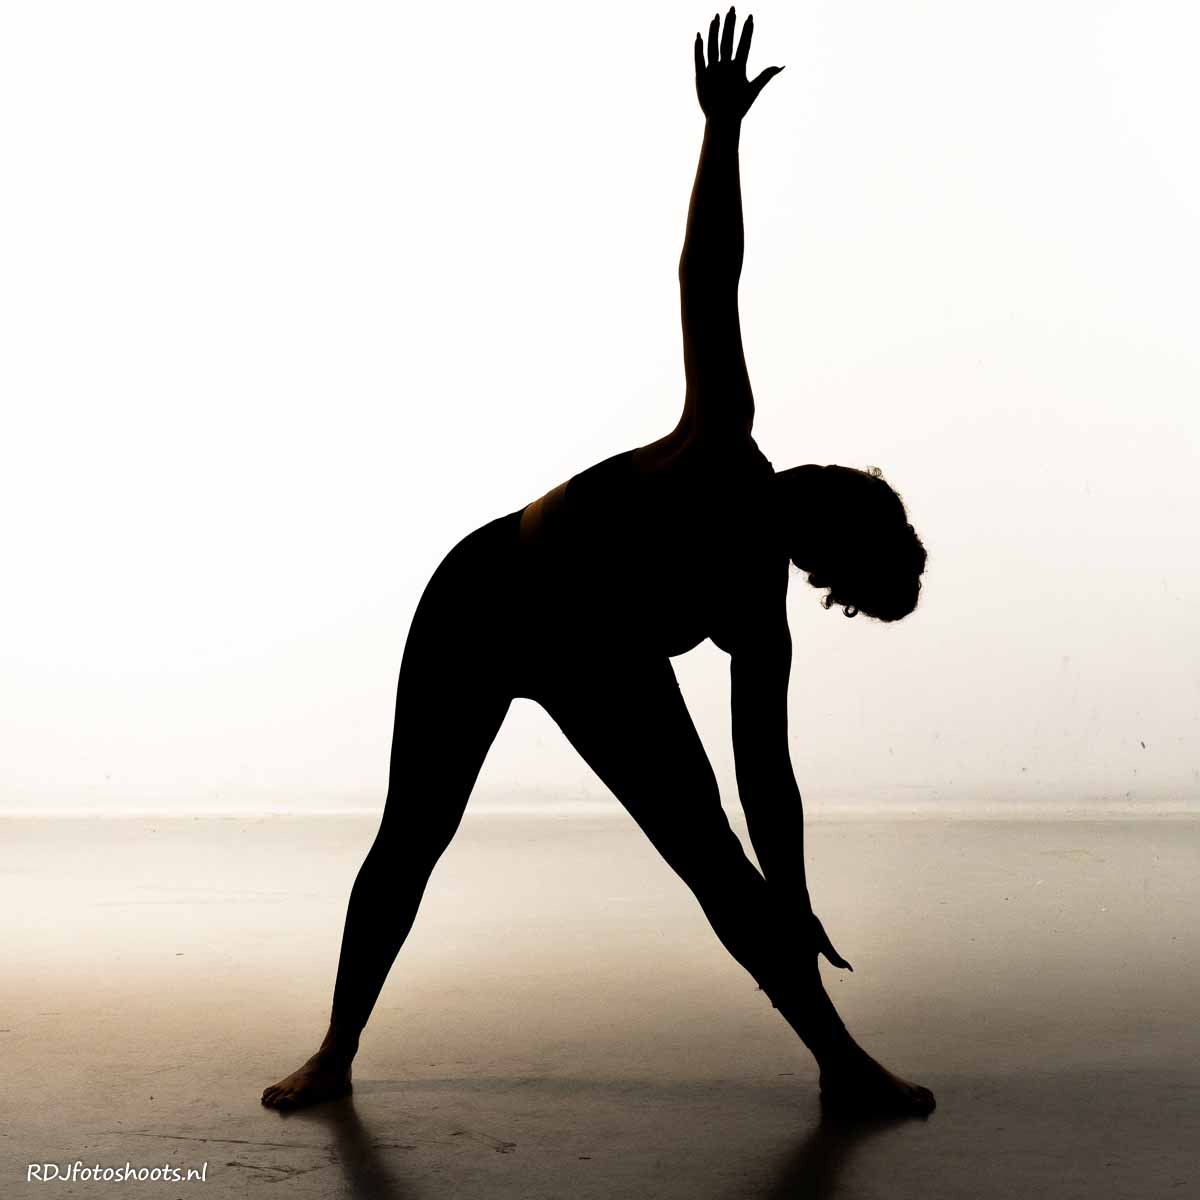 tfp spiritueel: Priscilla, silhouette yoga